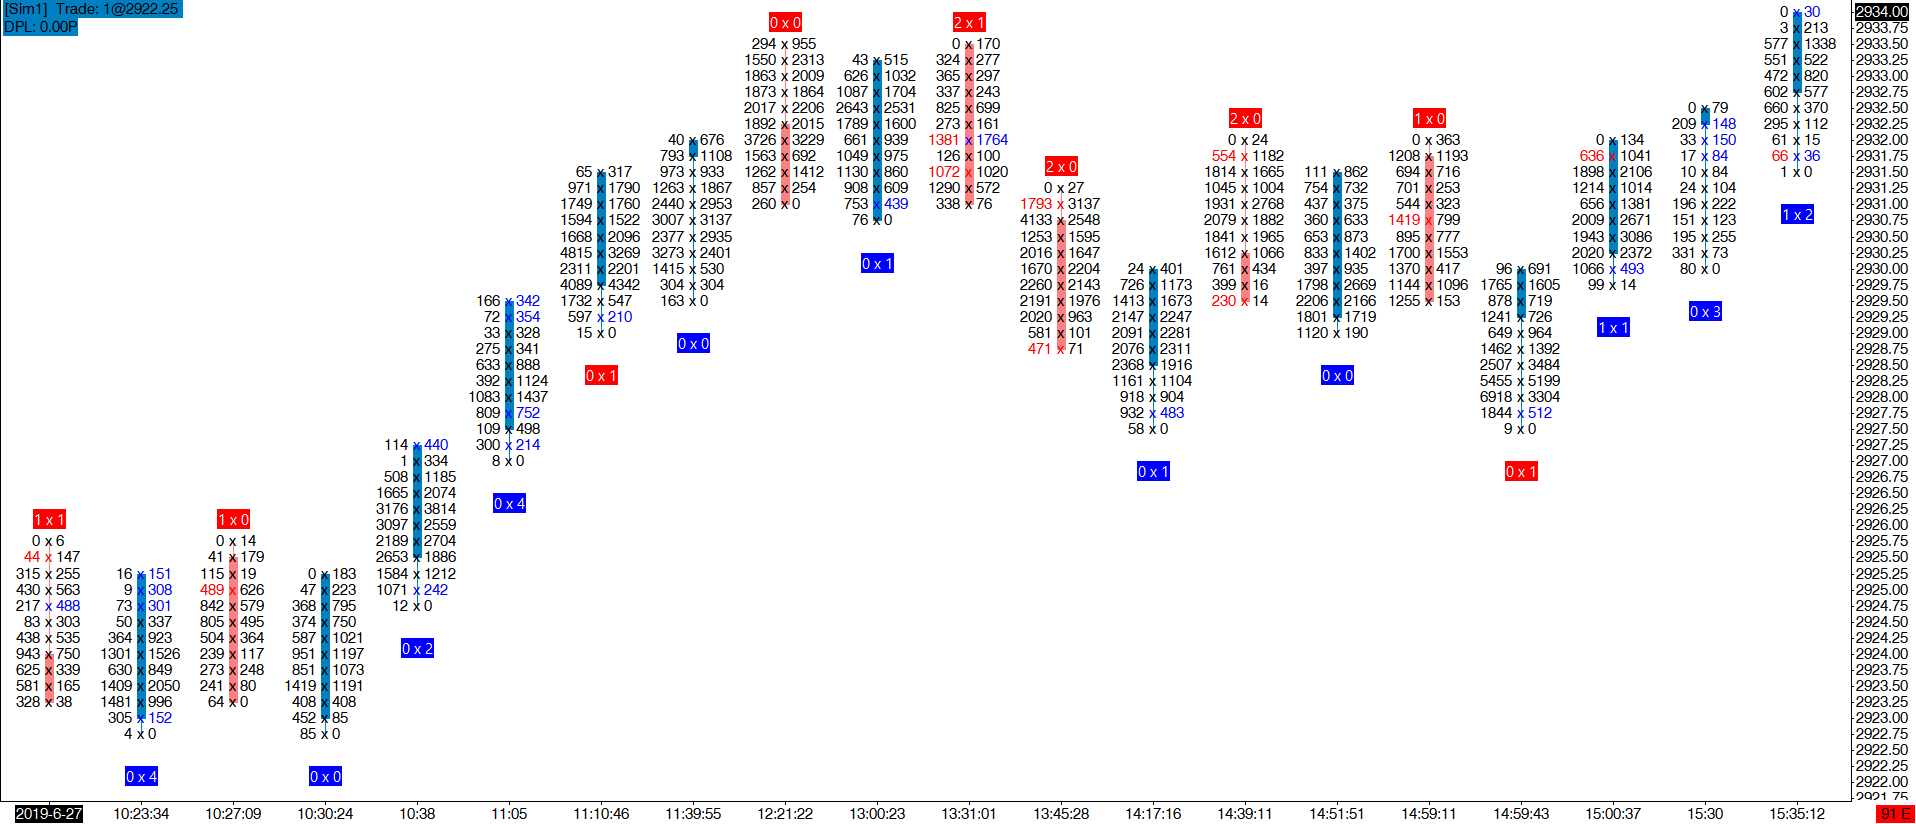 emoji trading multiple imbalances order flow snapshot